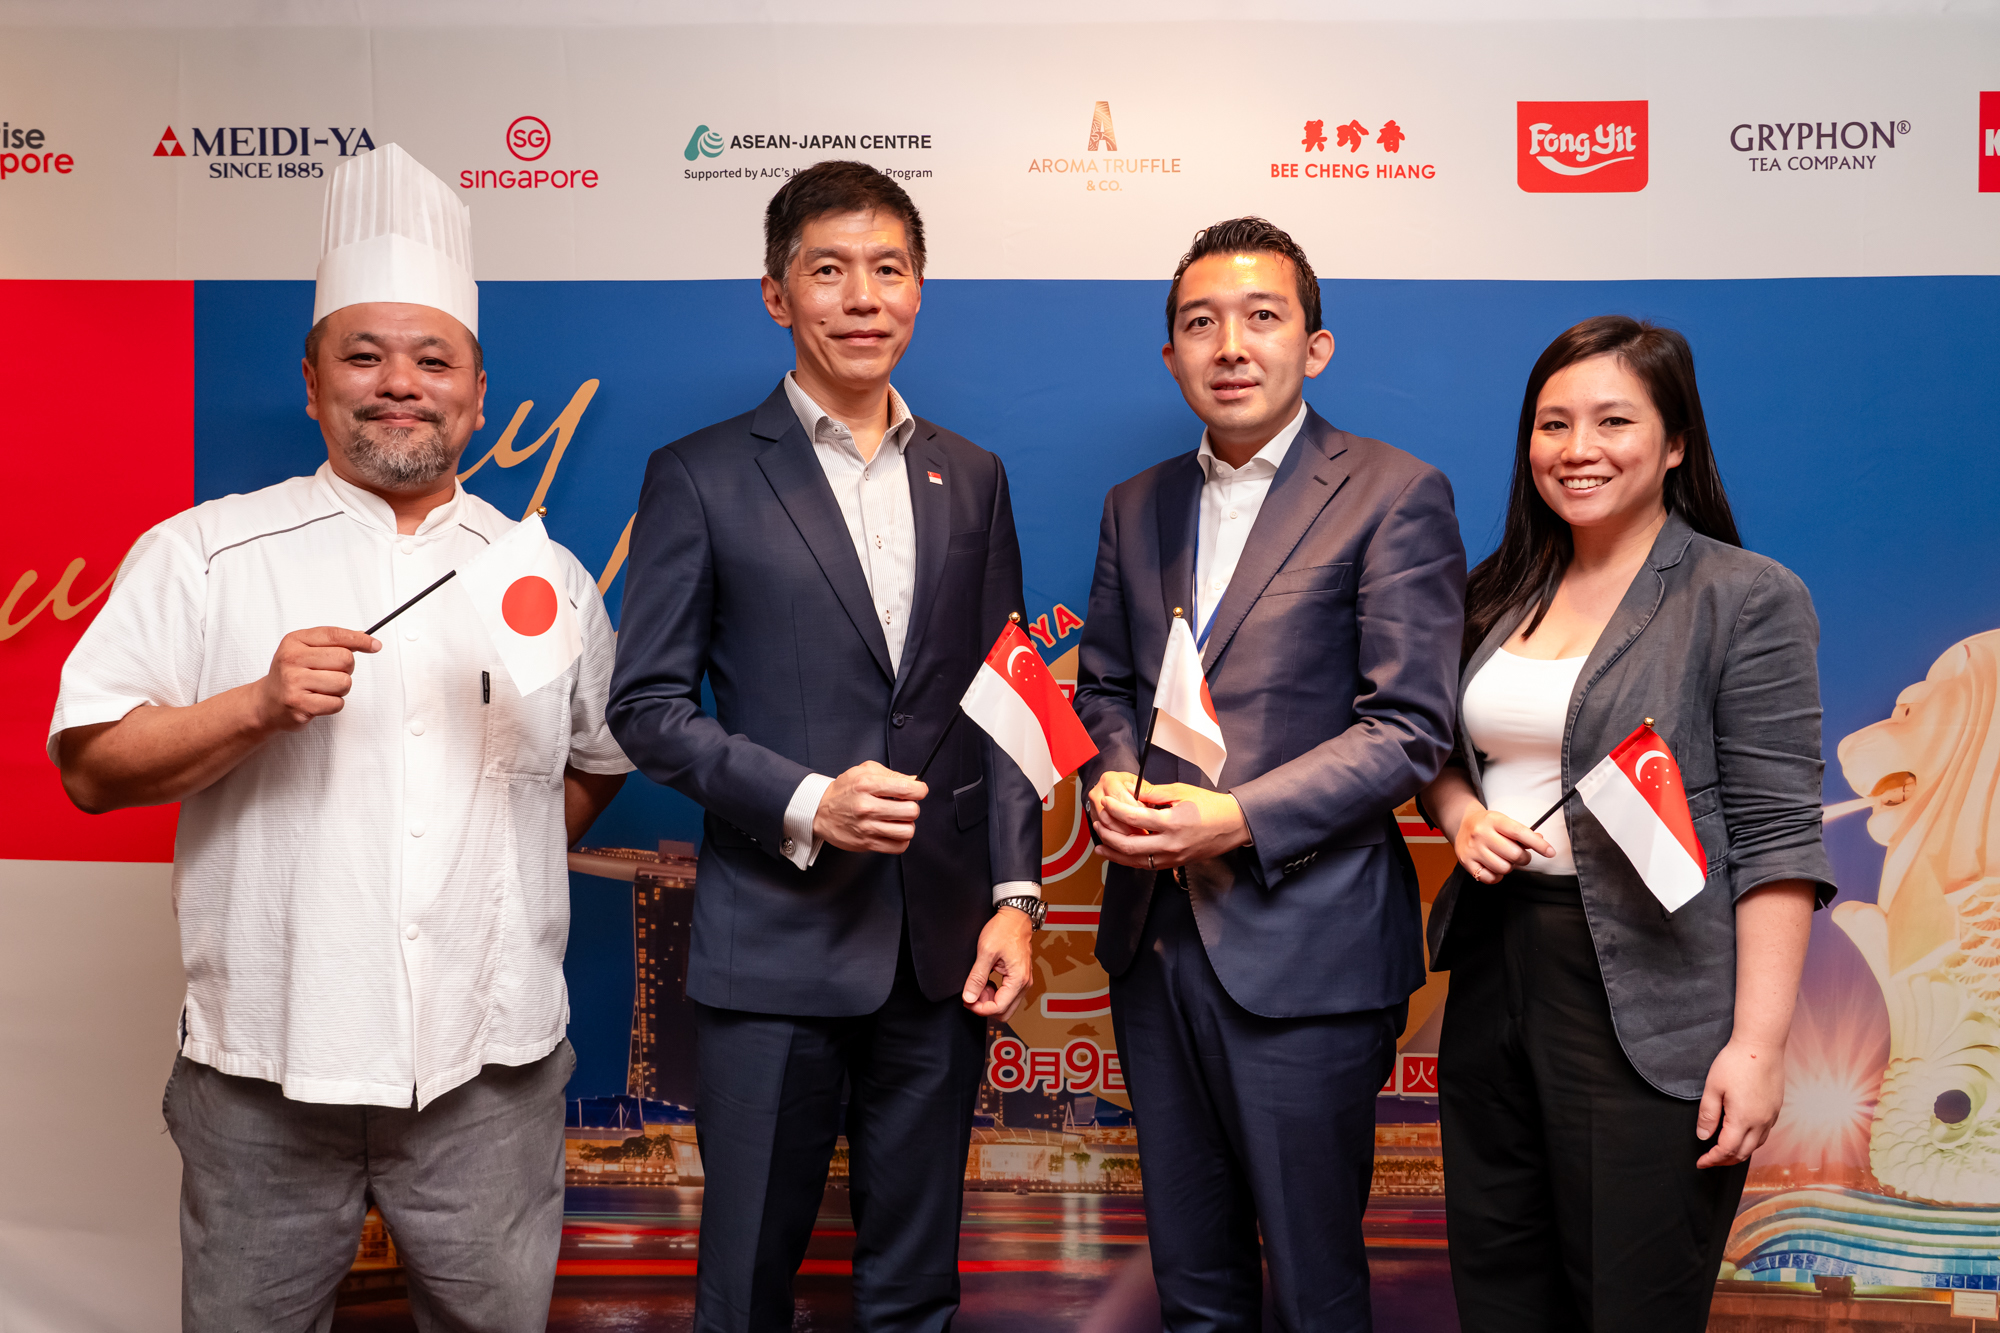 シンガポール大使が
「シンガポールと日本の食文化の架け橋になるフェア」と期待！
広尾と恵比寿の明治屋ストアーにて「シンガポールフェア」を
8月9日(水)から1週間の期間で開催！